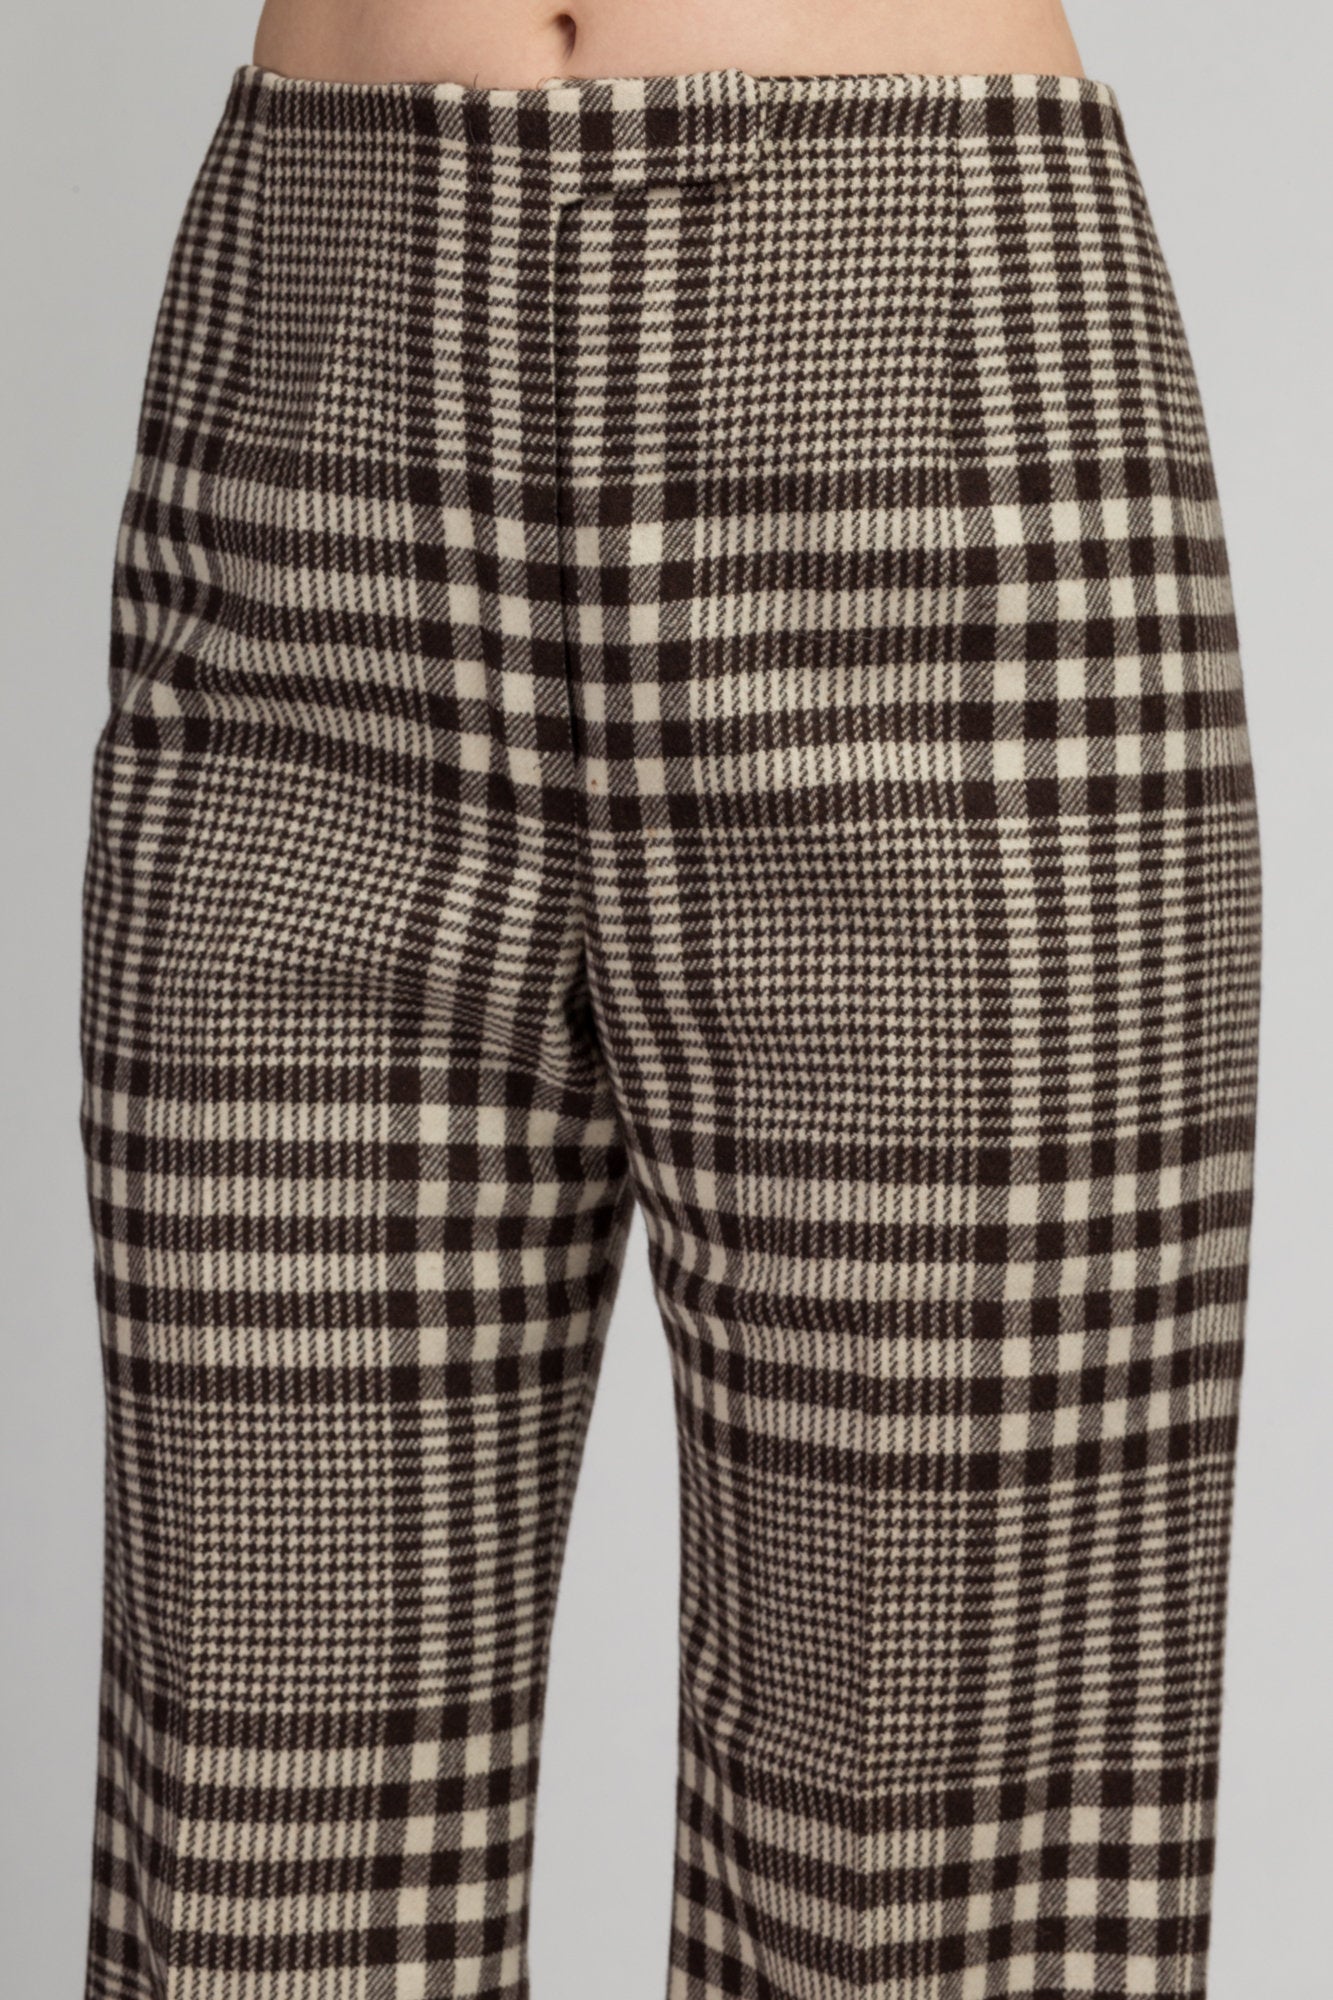 Grey & Black Plaid Stretch Woven Pants – Unique Vintage